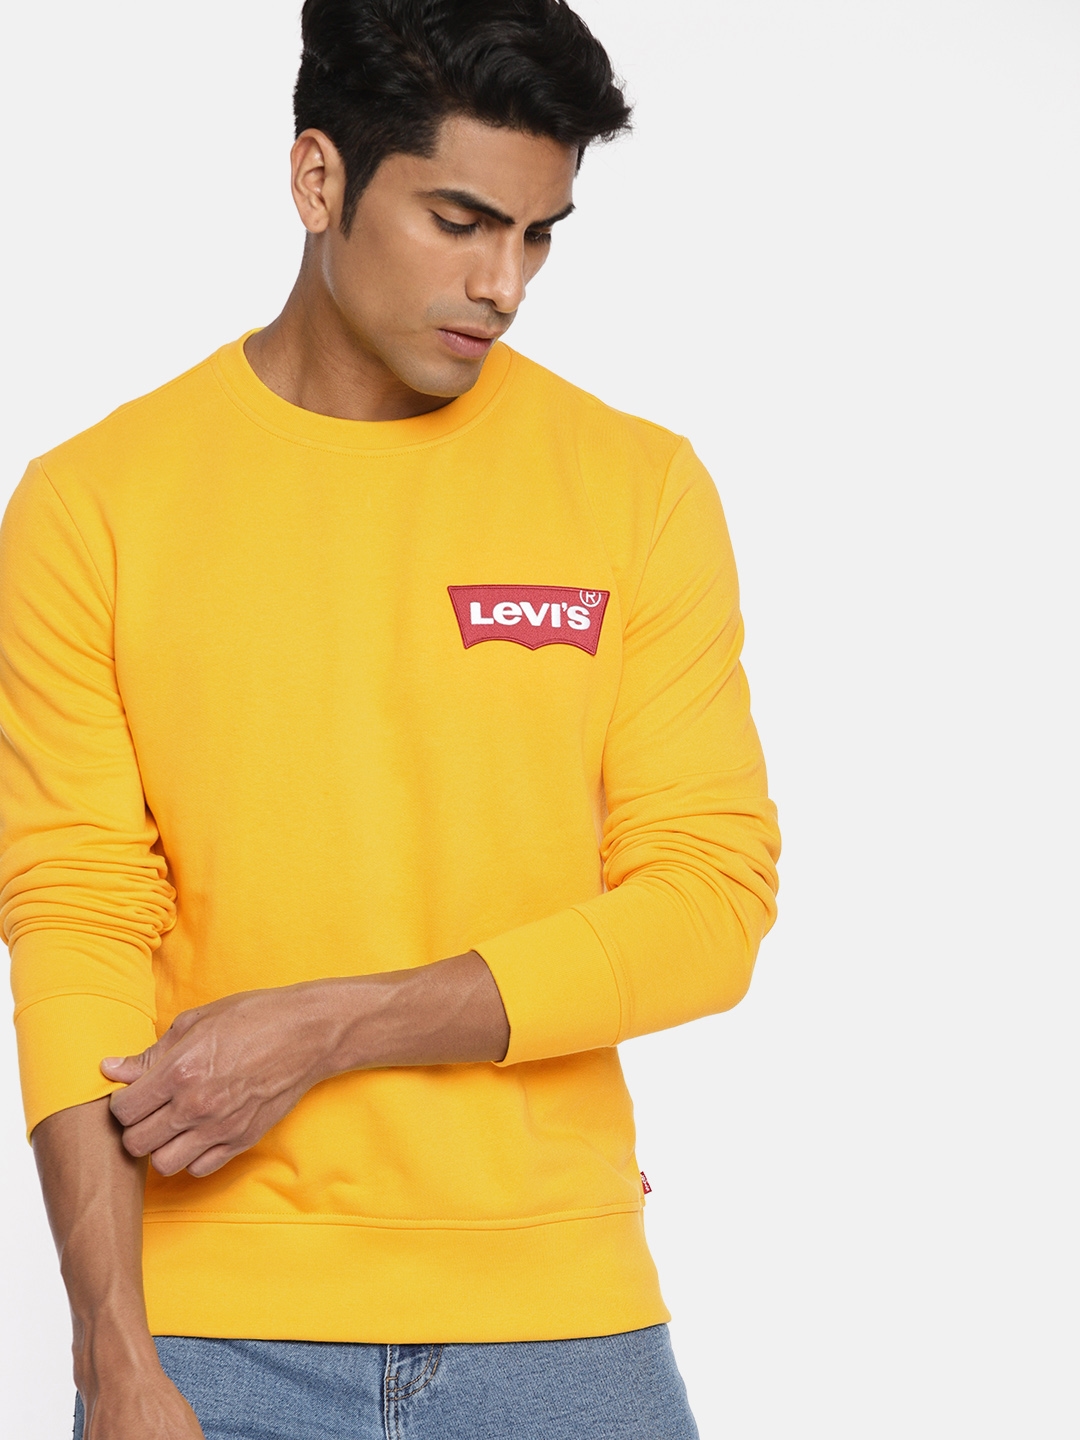 Buy Levis Men Yellow Solid Sweatshirt - Sweatshirts for Men 9907637 | Myntra